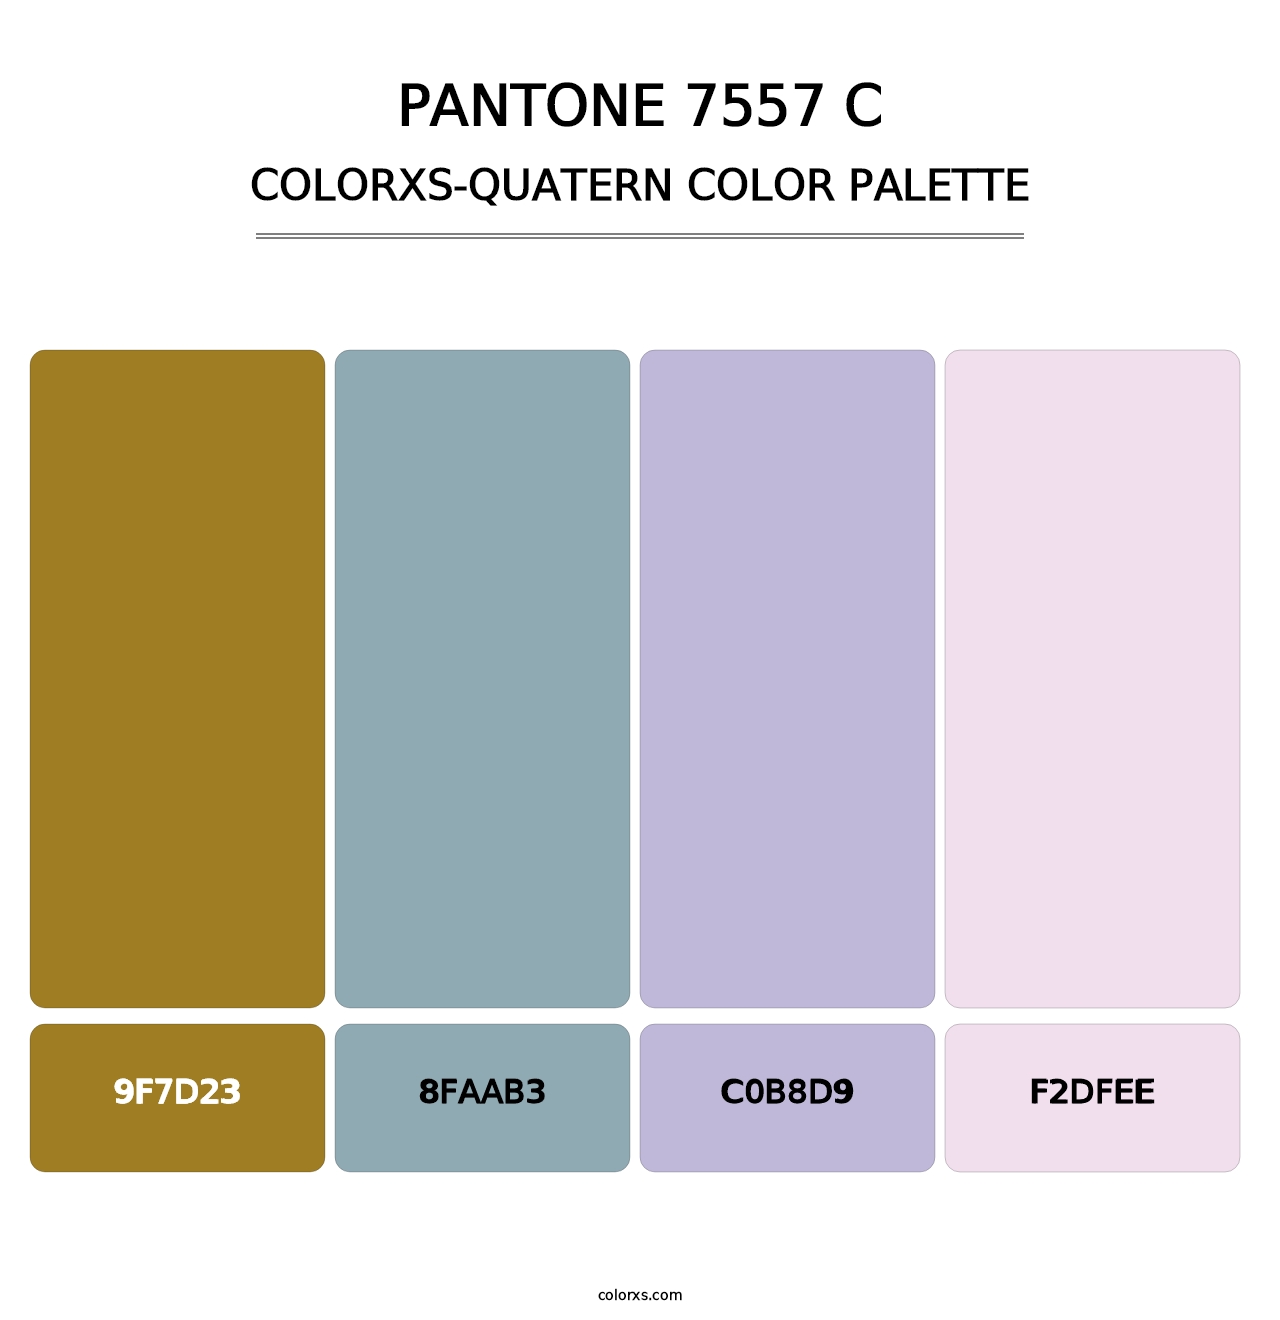 PANTONE 7557 C - Colorxs Quatern Palette